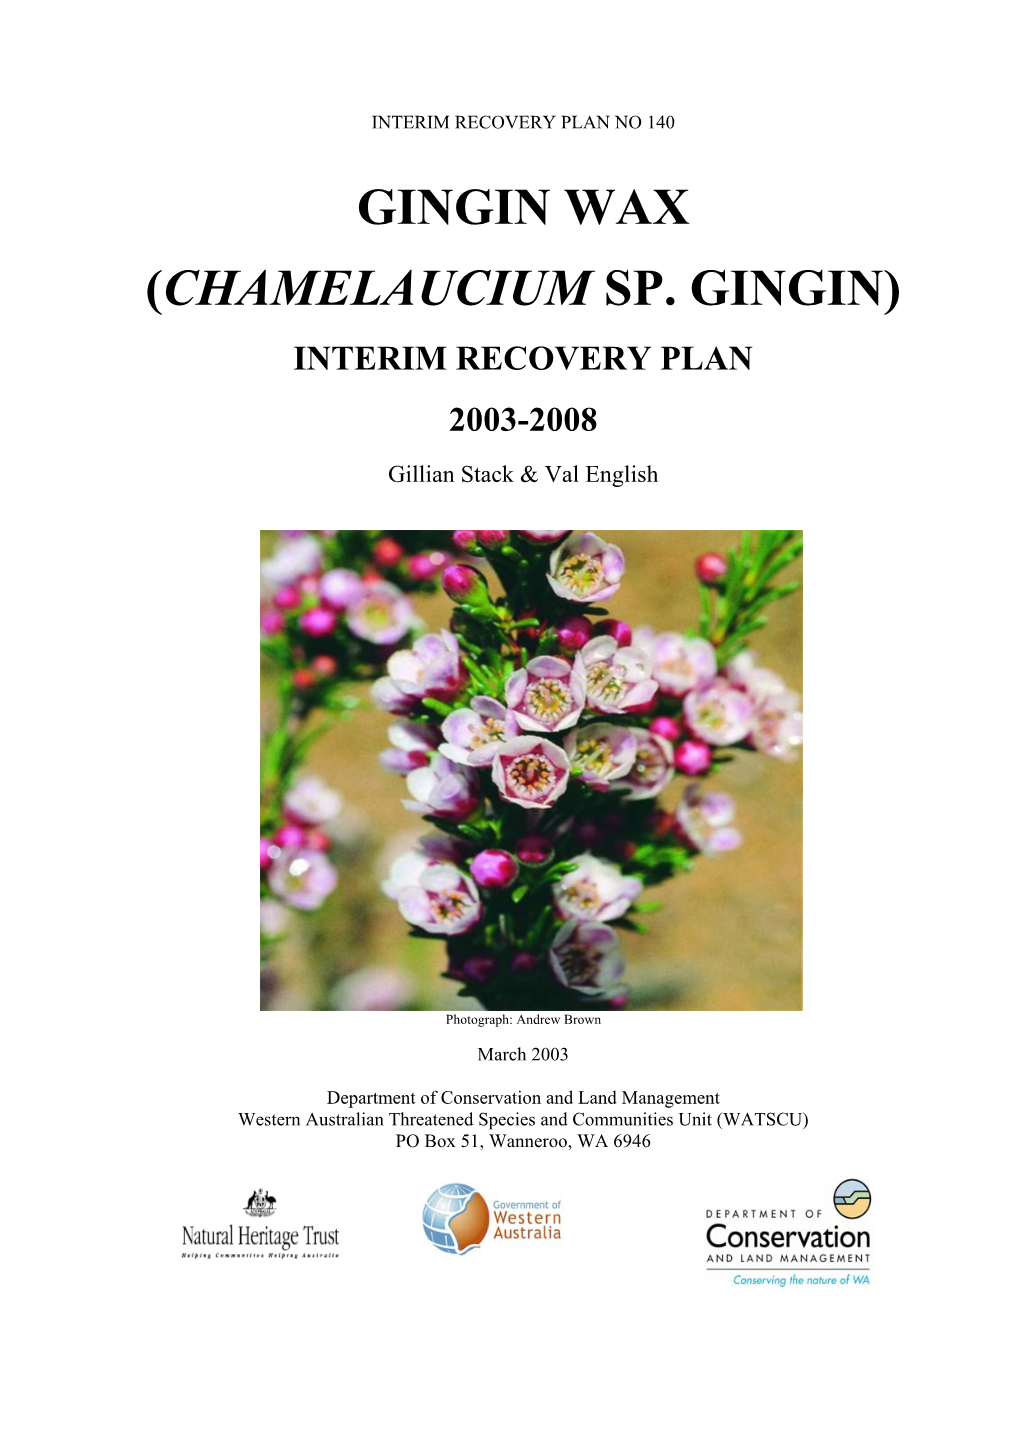 Chamelaucium Sp. Gingin)